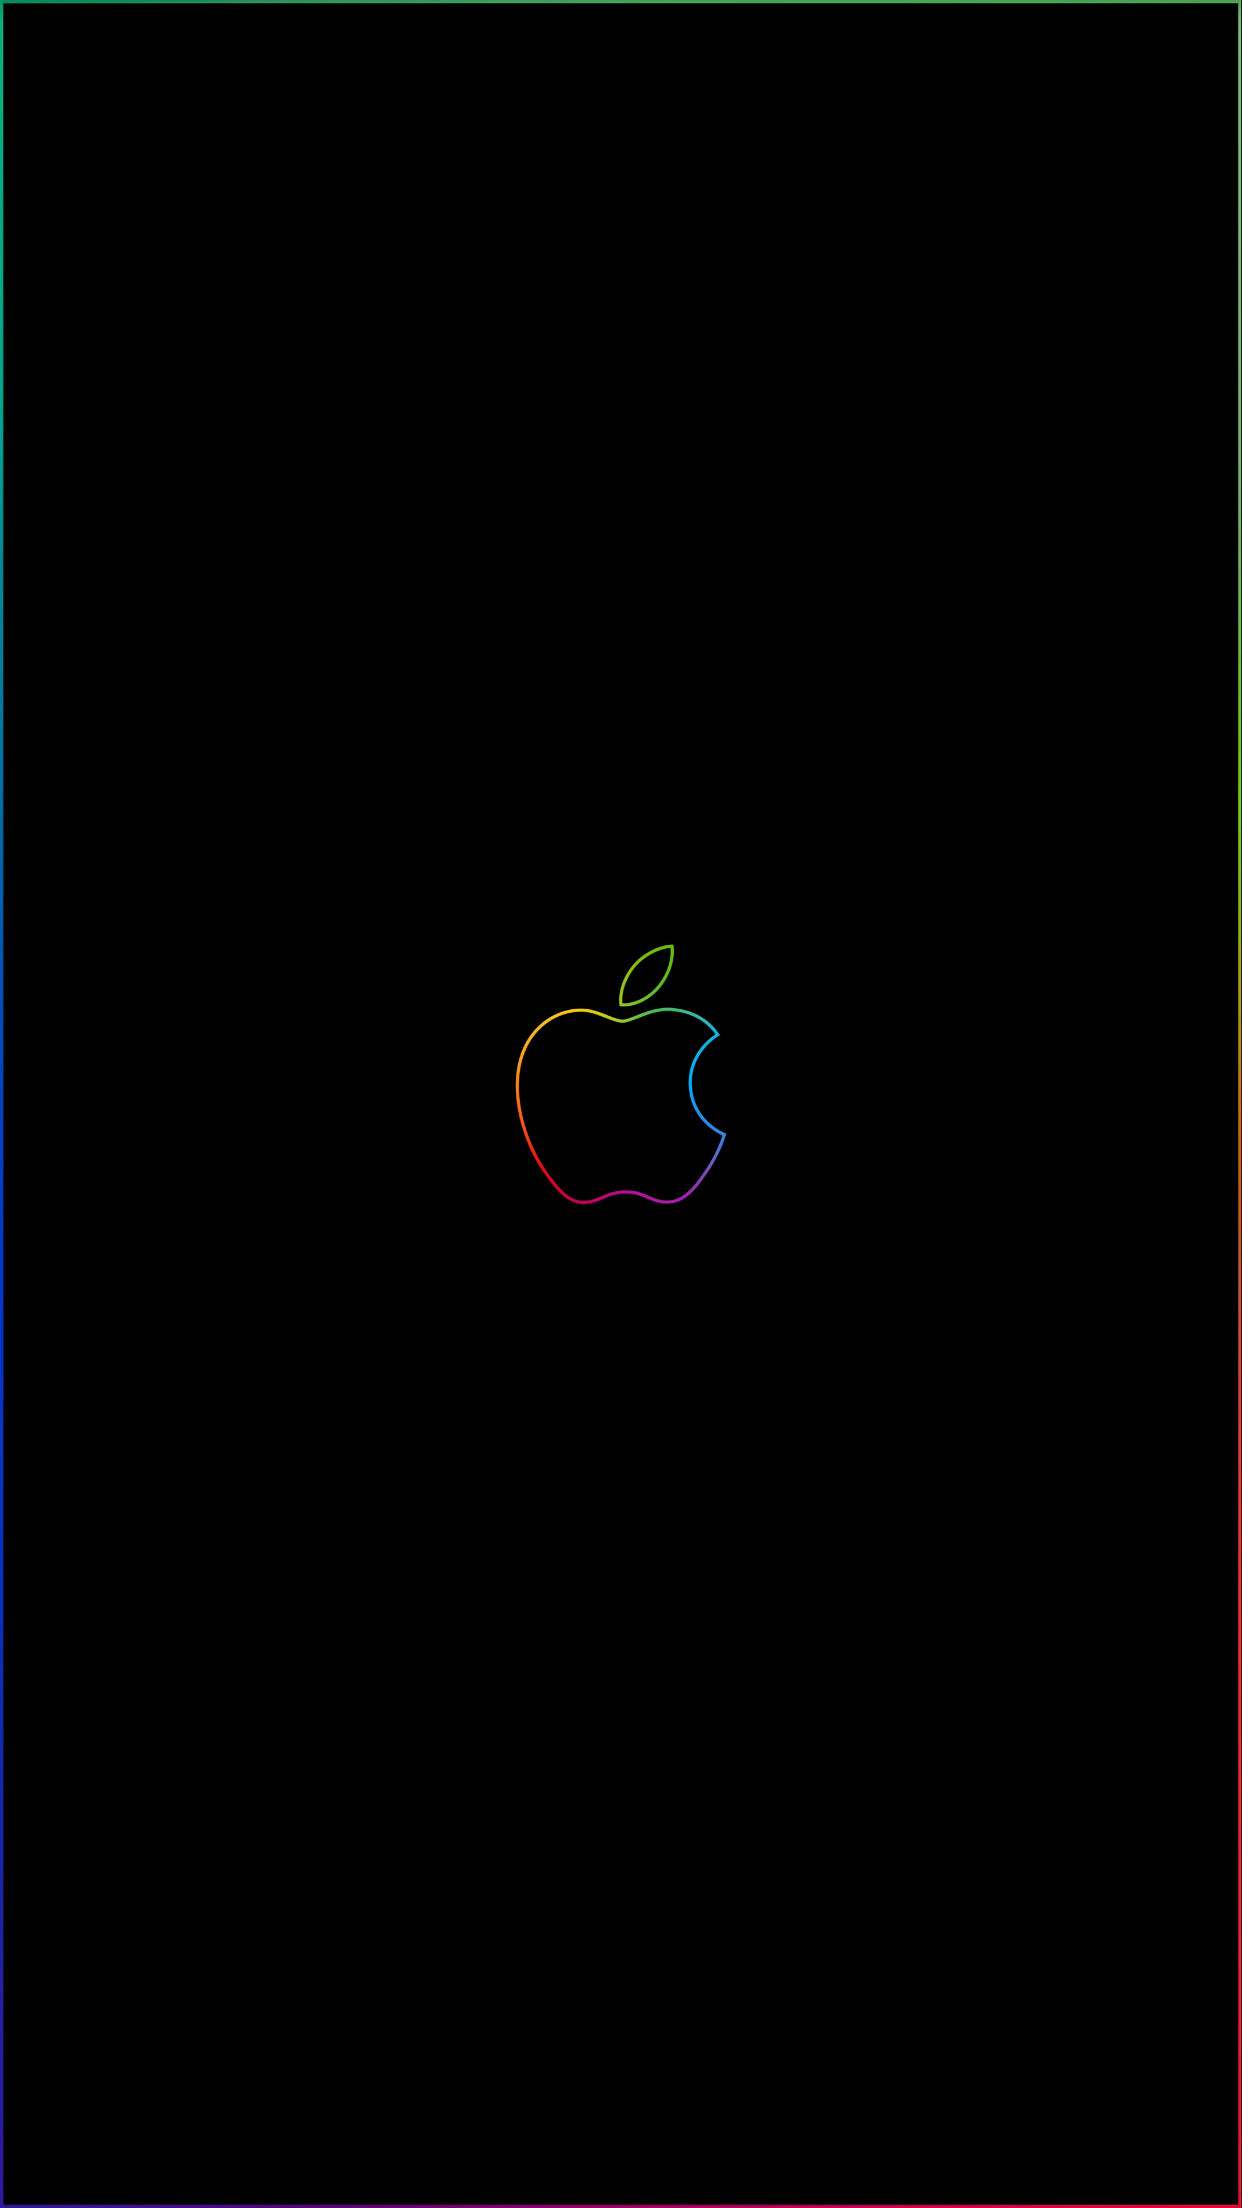 Apple Badge iPhone Wallpaperélécharger Gratuites